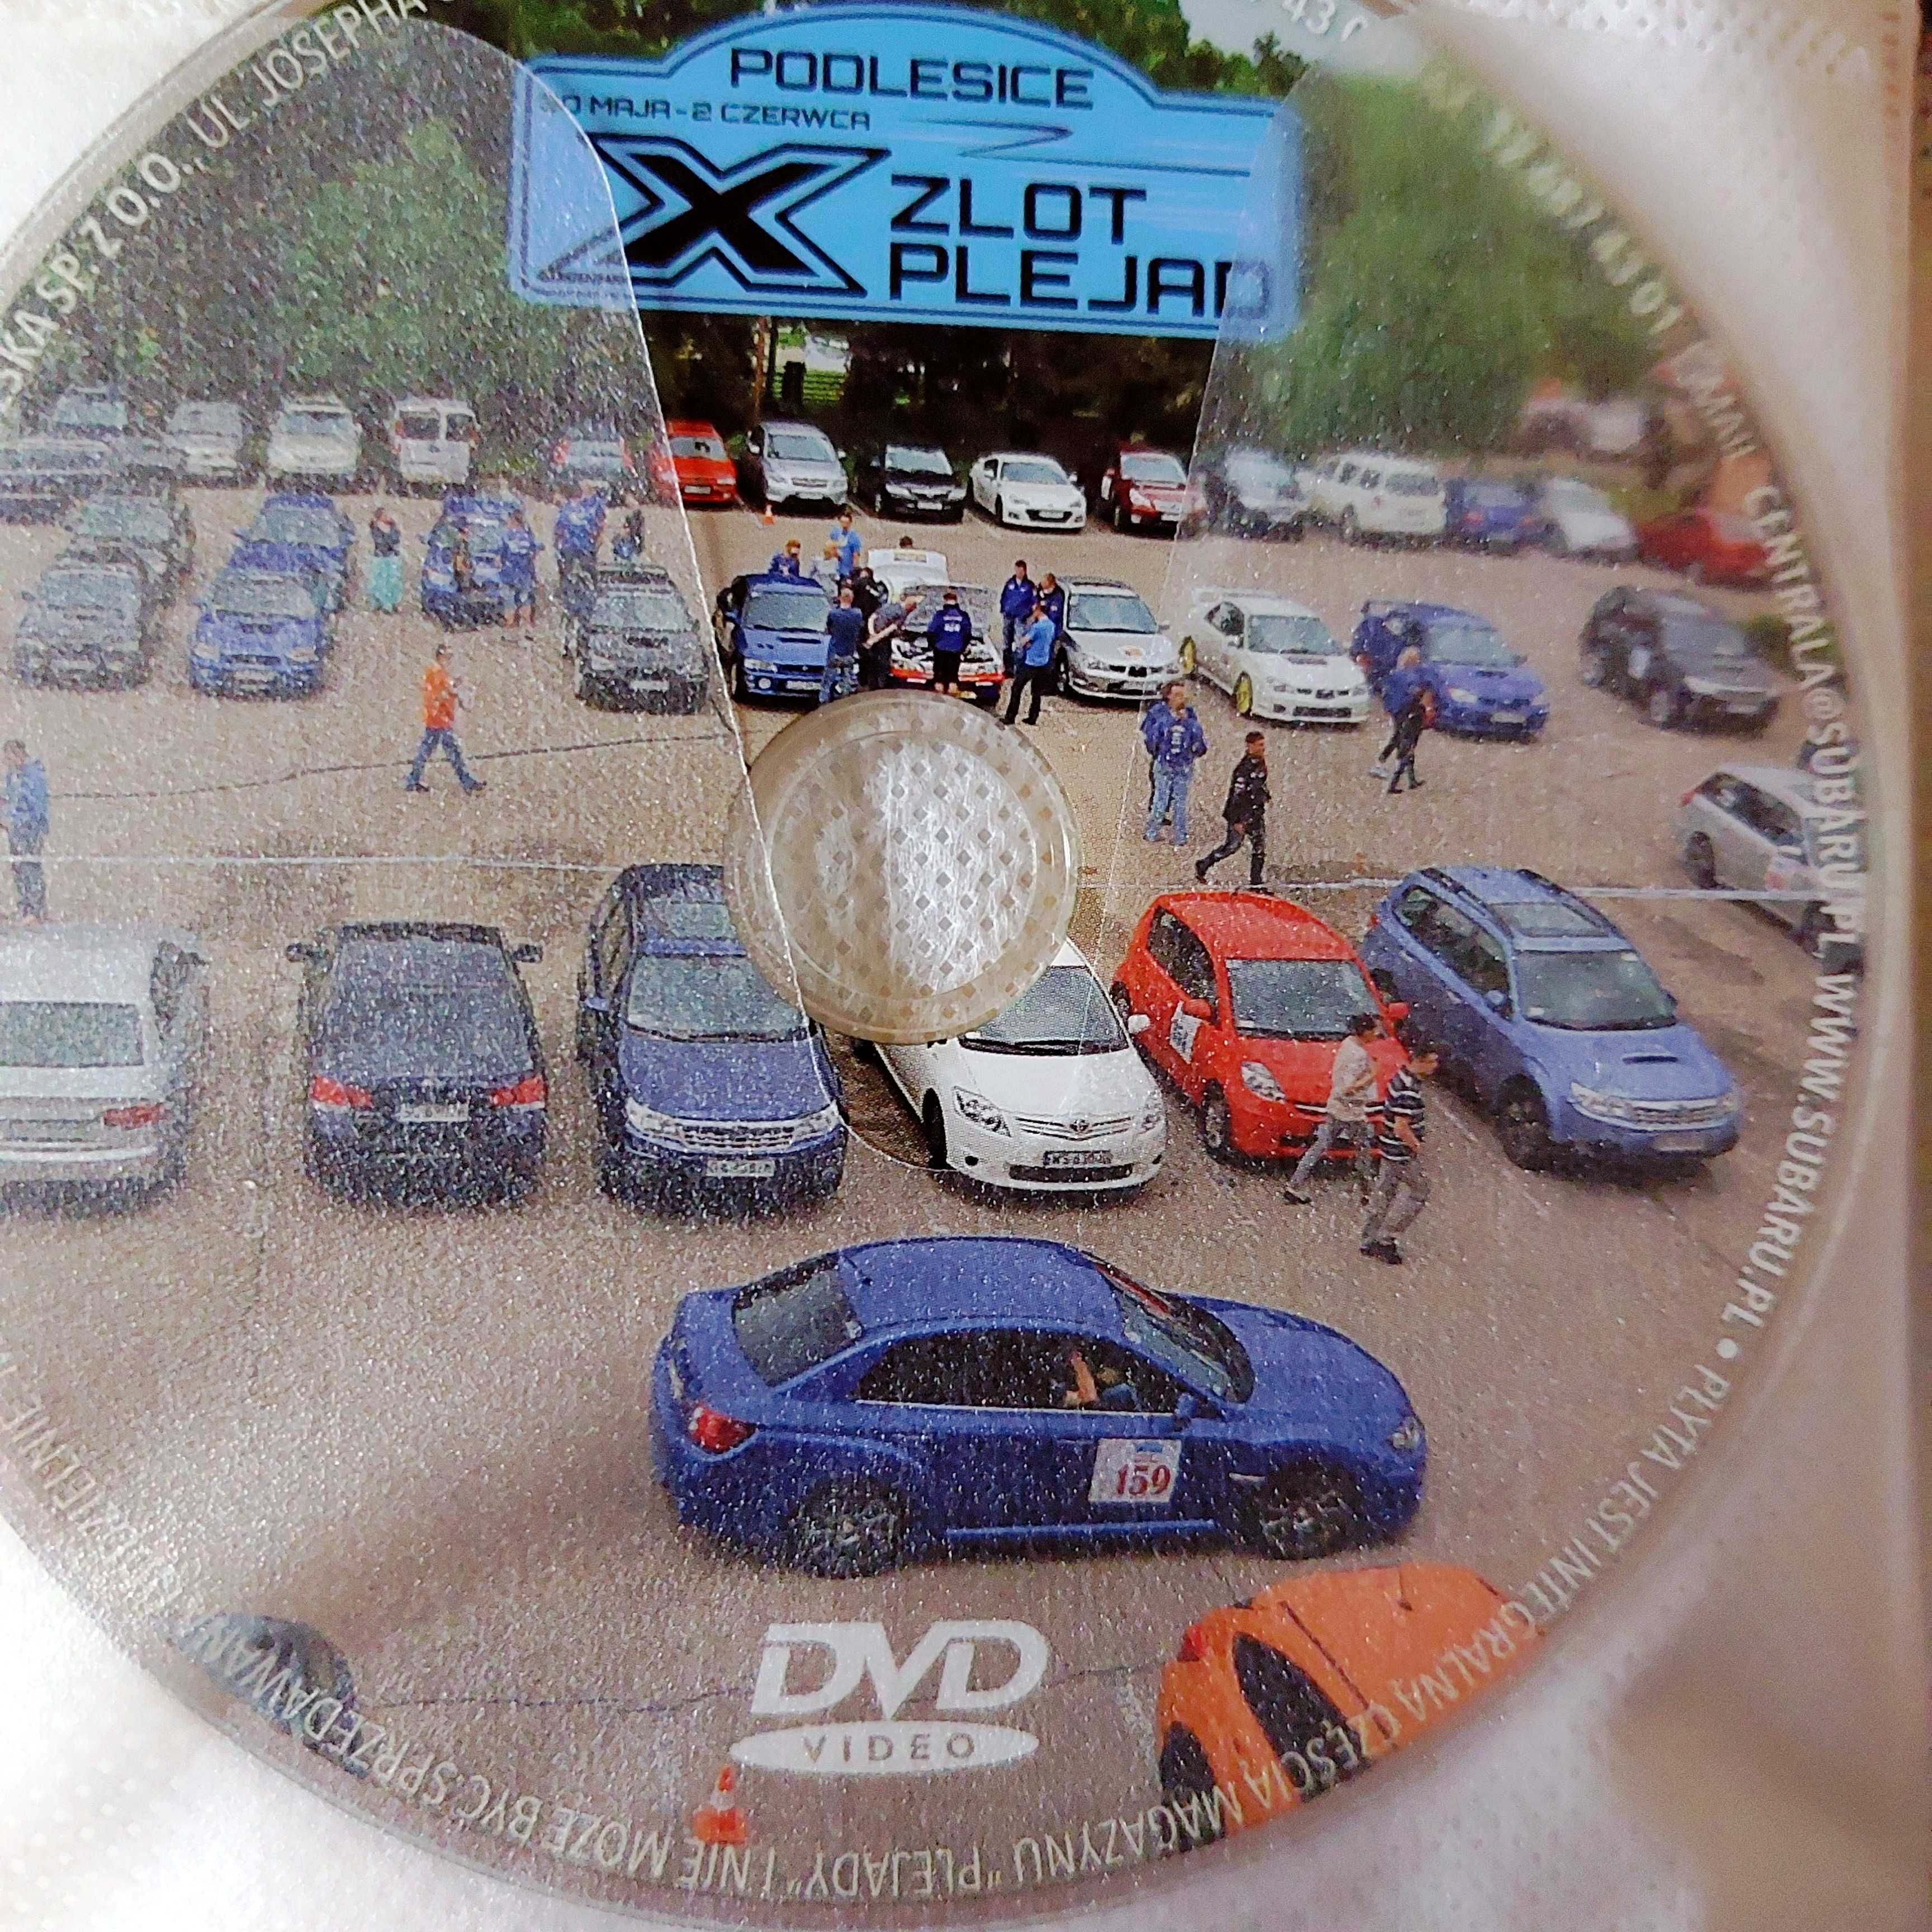 X ZLOT PLEJAD: Podlesice Maj - Czerwiec | materiały na DVD